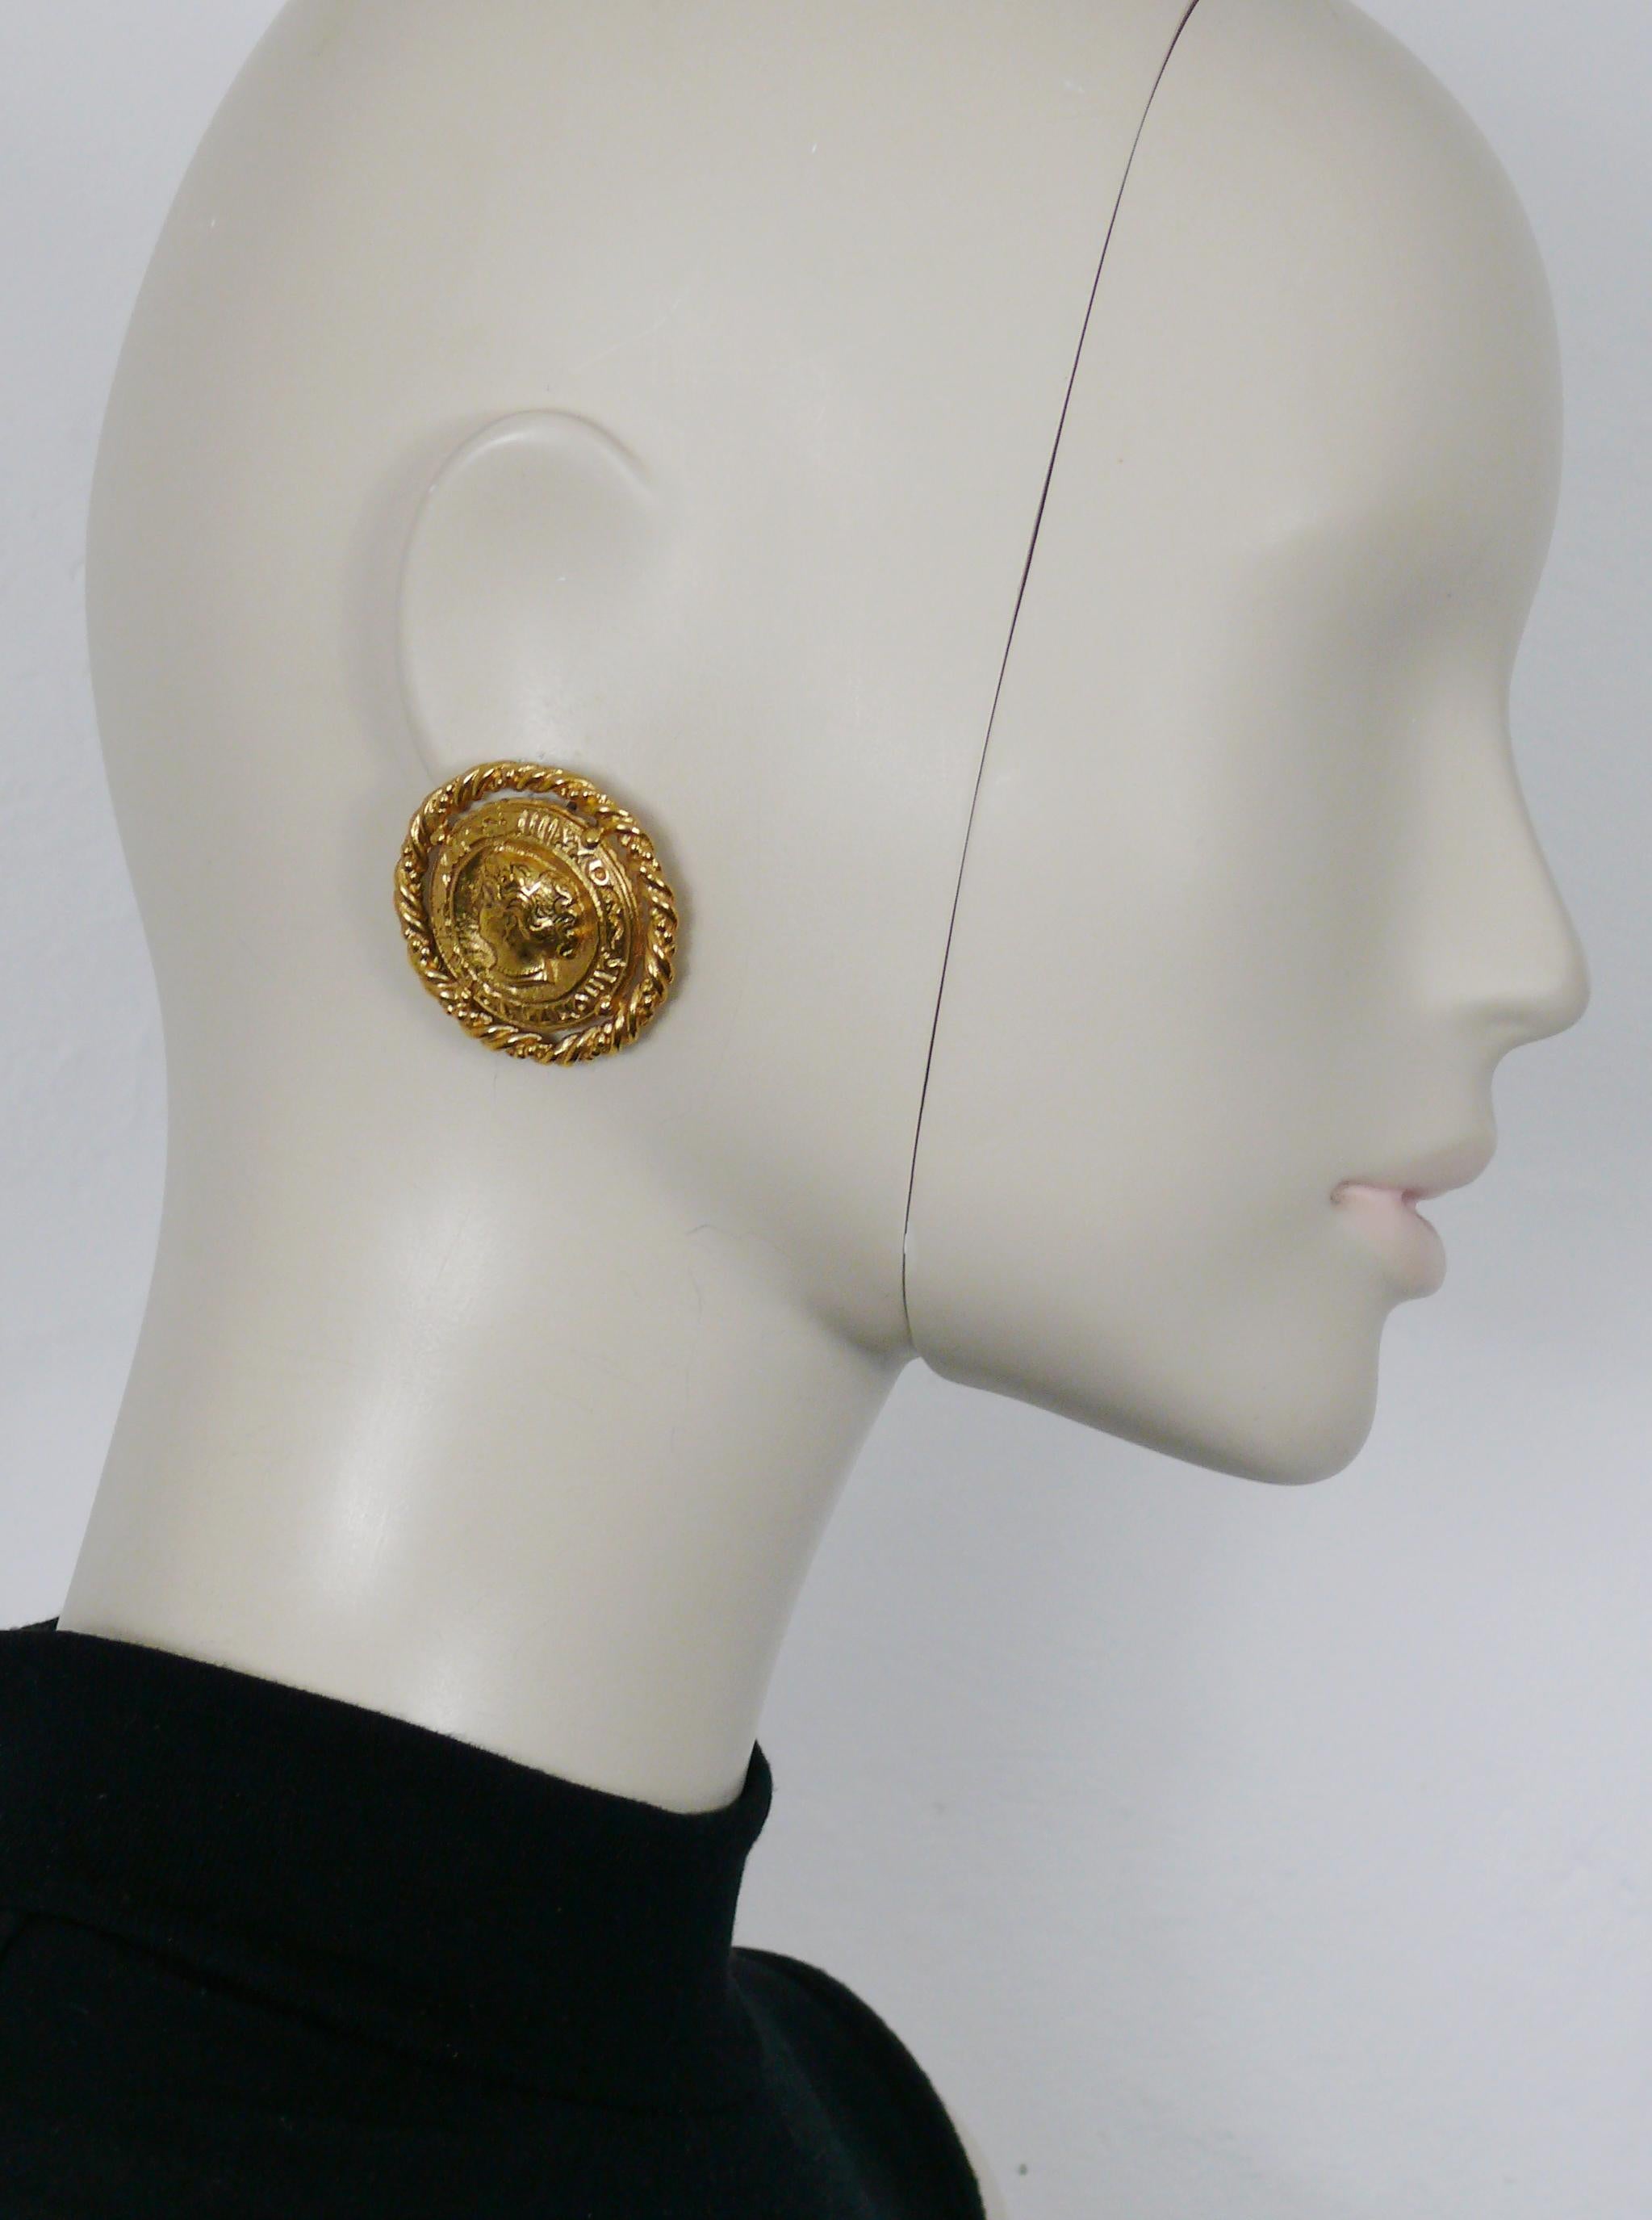 Boucles d'oreilles clip YVES SAINT LAURENT vintage en relief, en or, avec une pièce de monnaie en forme de dame dans une bordure à motif de torsade.

Gaufrage YSL Made in France.

Mesures indicatives : diamètre d'environ 3,8 cm (1,50 pouces).

Poids